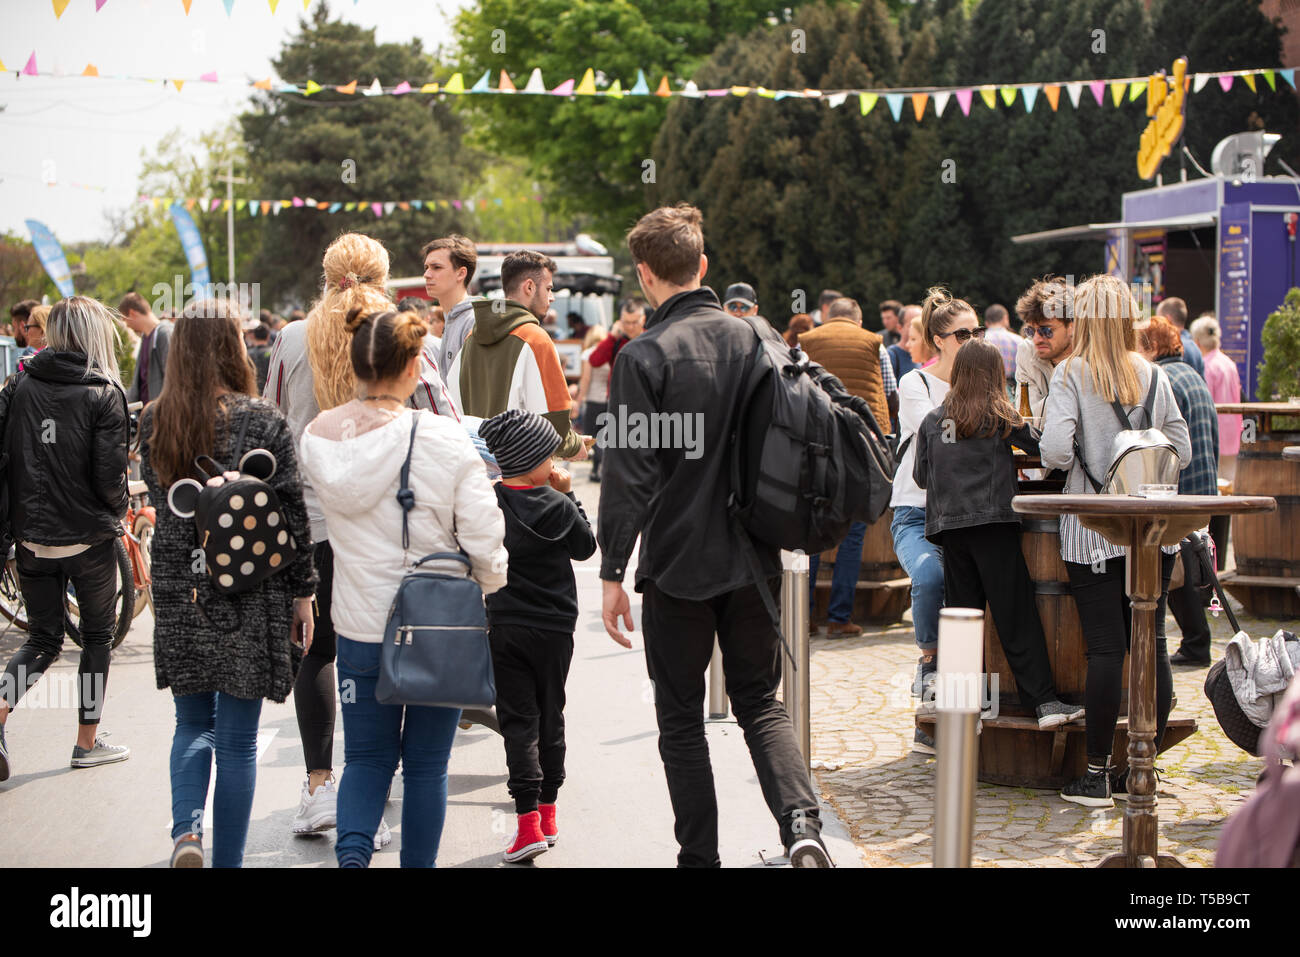 A Bucarest in Romania: 21.04.2019 - Street Food festival del carrello. In prossimità di persone a piedi attorno a una street food festival nella ricerca del perfetto il pranzo. Fine settimana di attività all'aperto Foto Stock